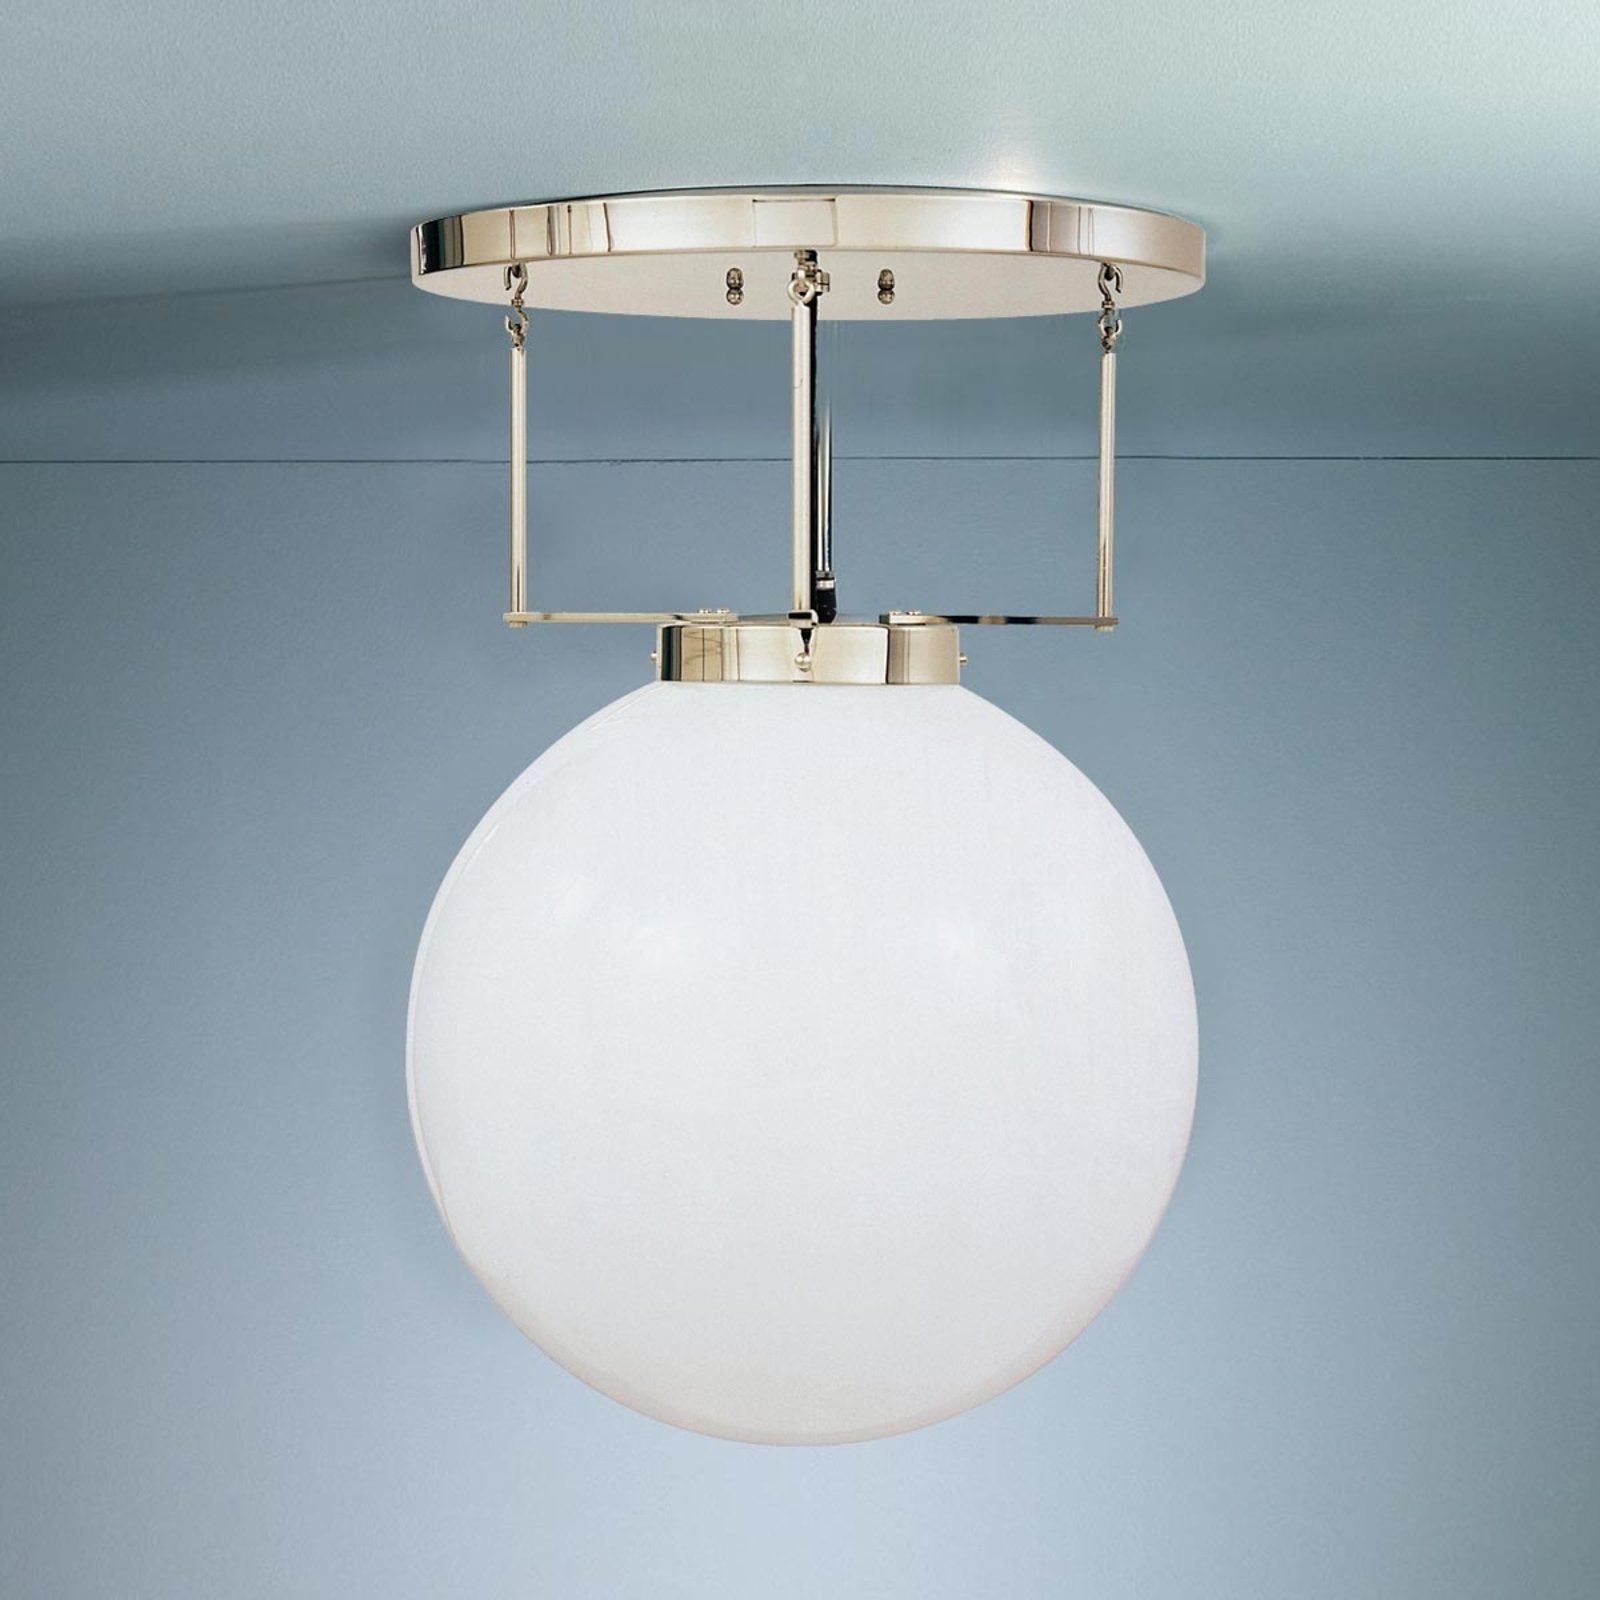 Plafondlamp van messing in Bauhaus-stijl, 35 cm